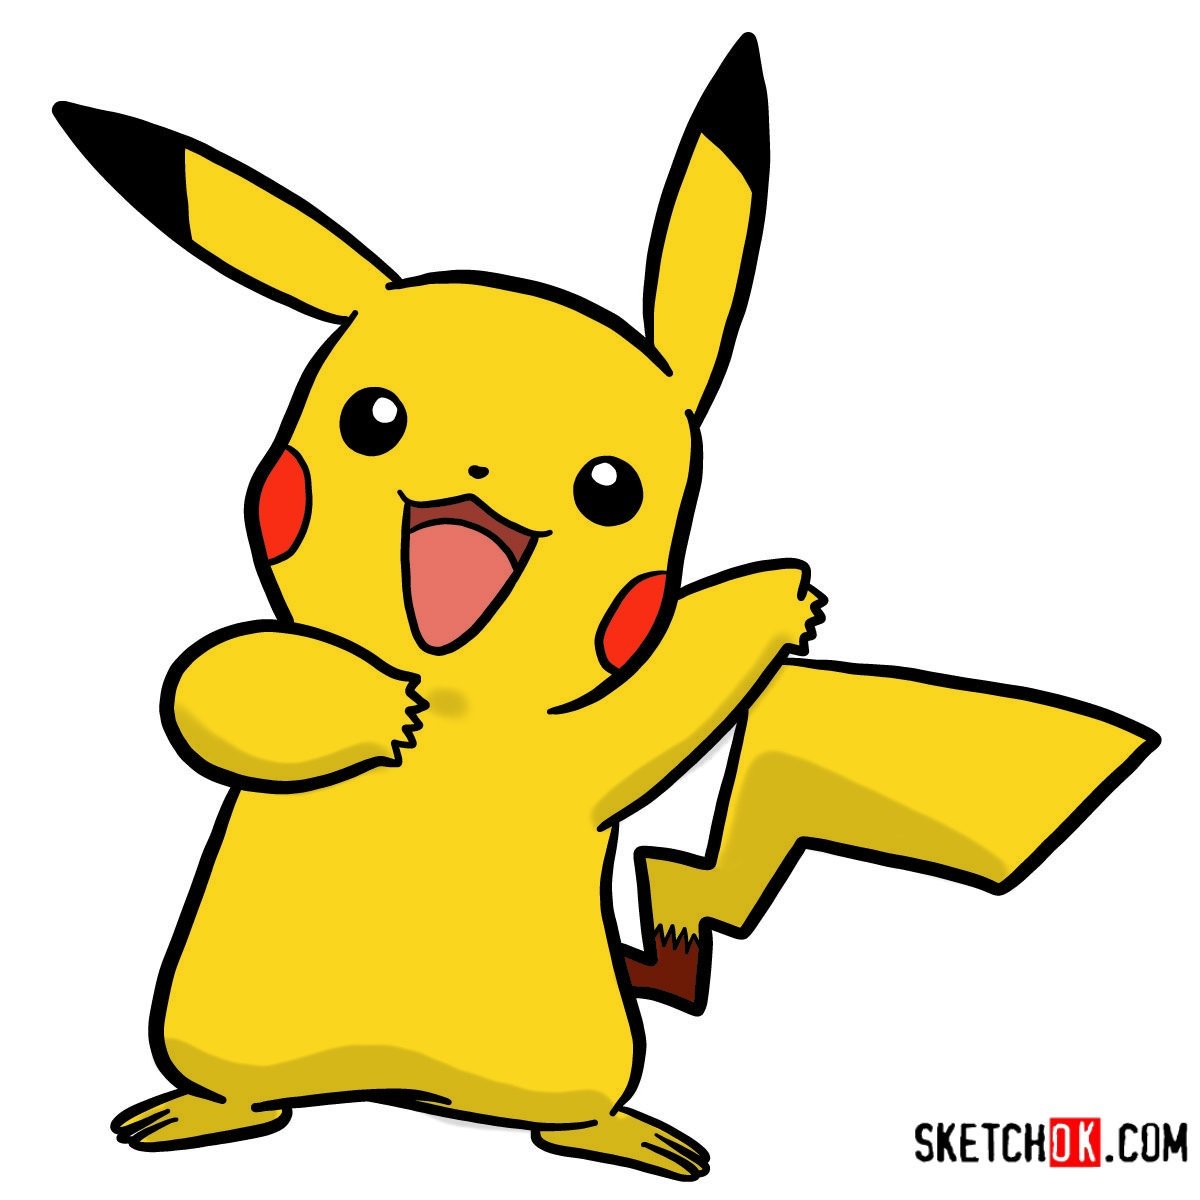 How to draw Happy Pikachu | Pokemon